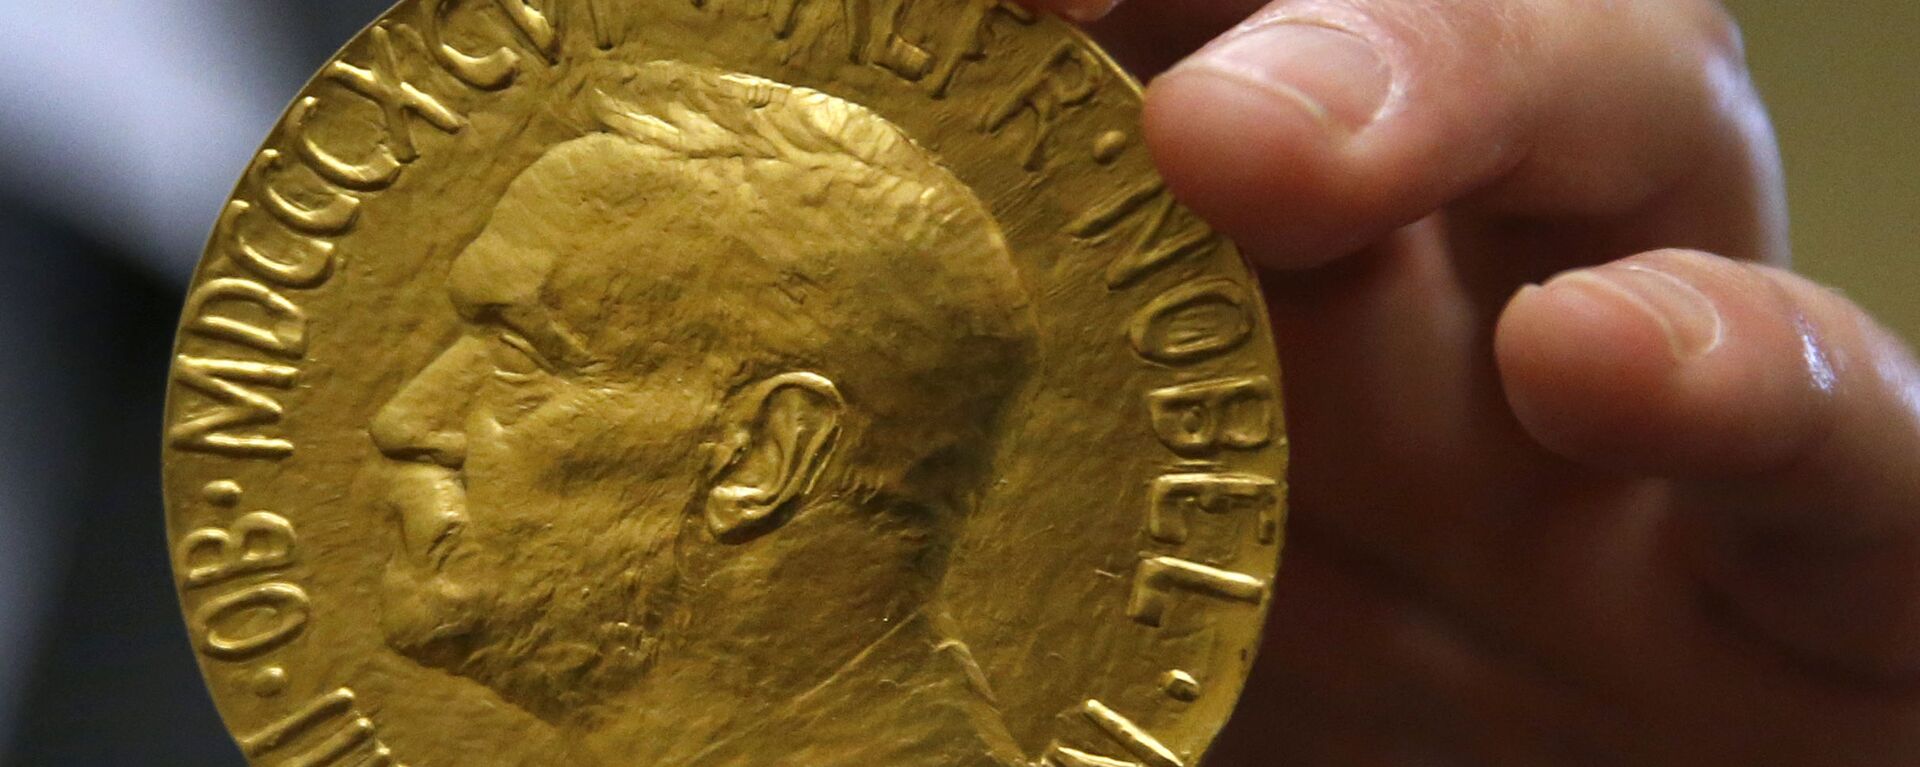 Medalla del Premio Nobel de la Paz otorgada a Carlos Saavedra Lamas subastada en 2014 - Sputnik Mundo, 1920, 08.10.2021